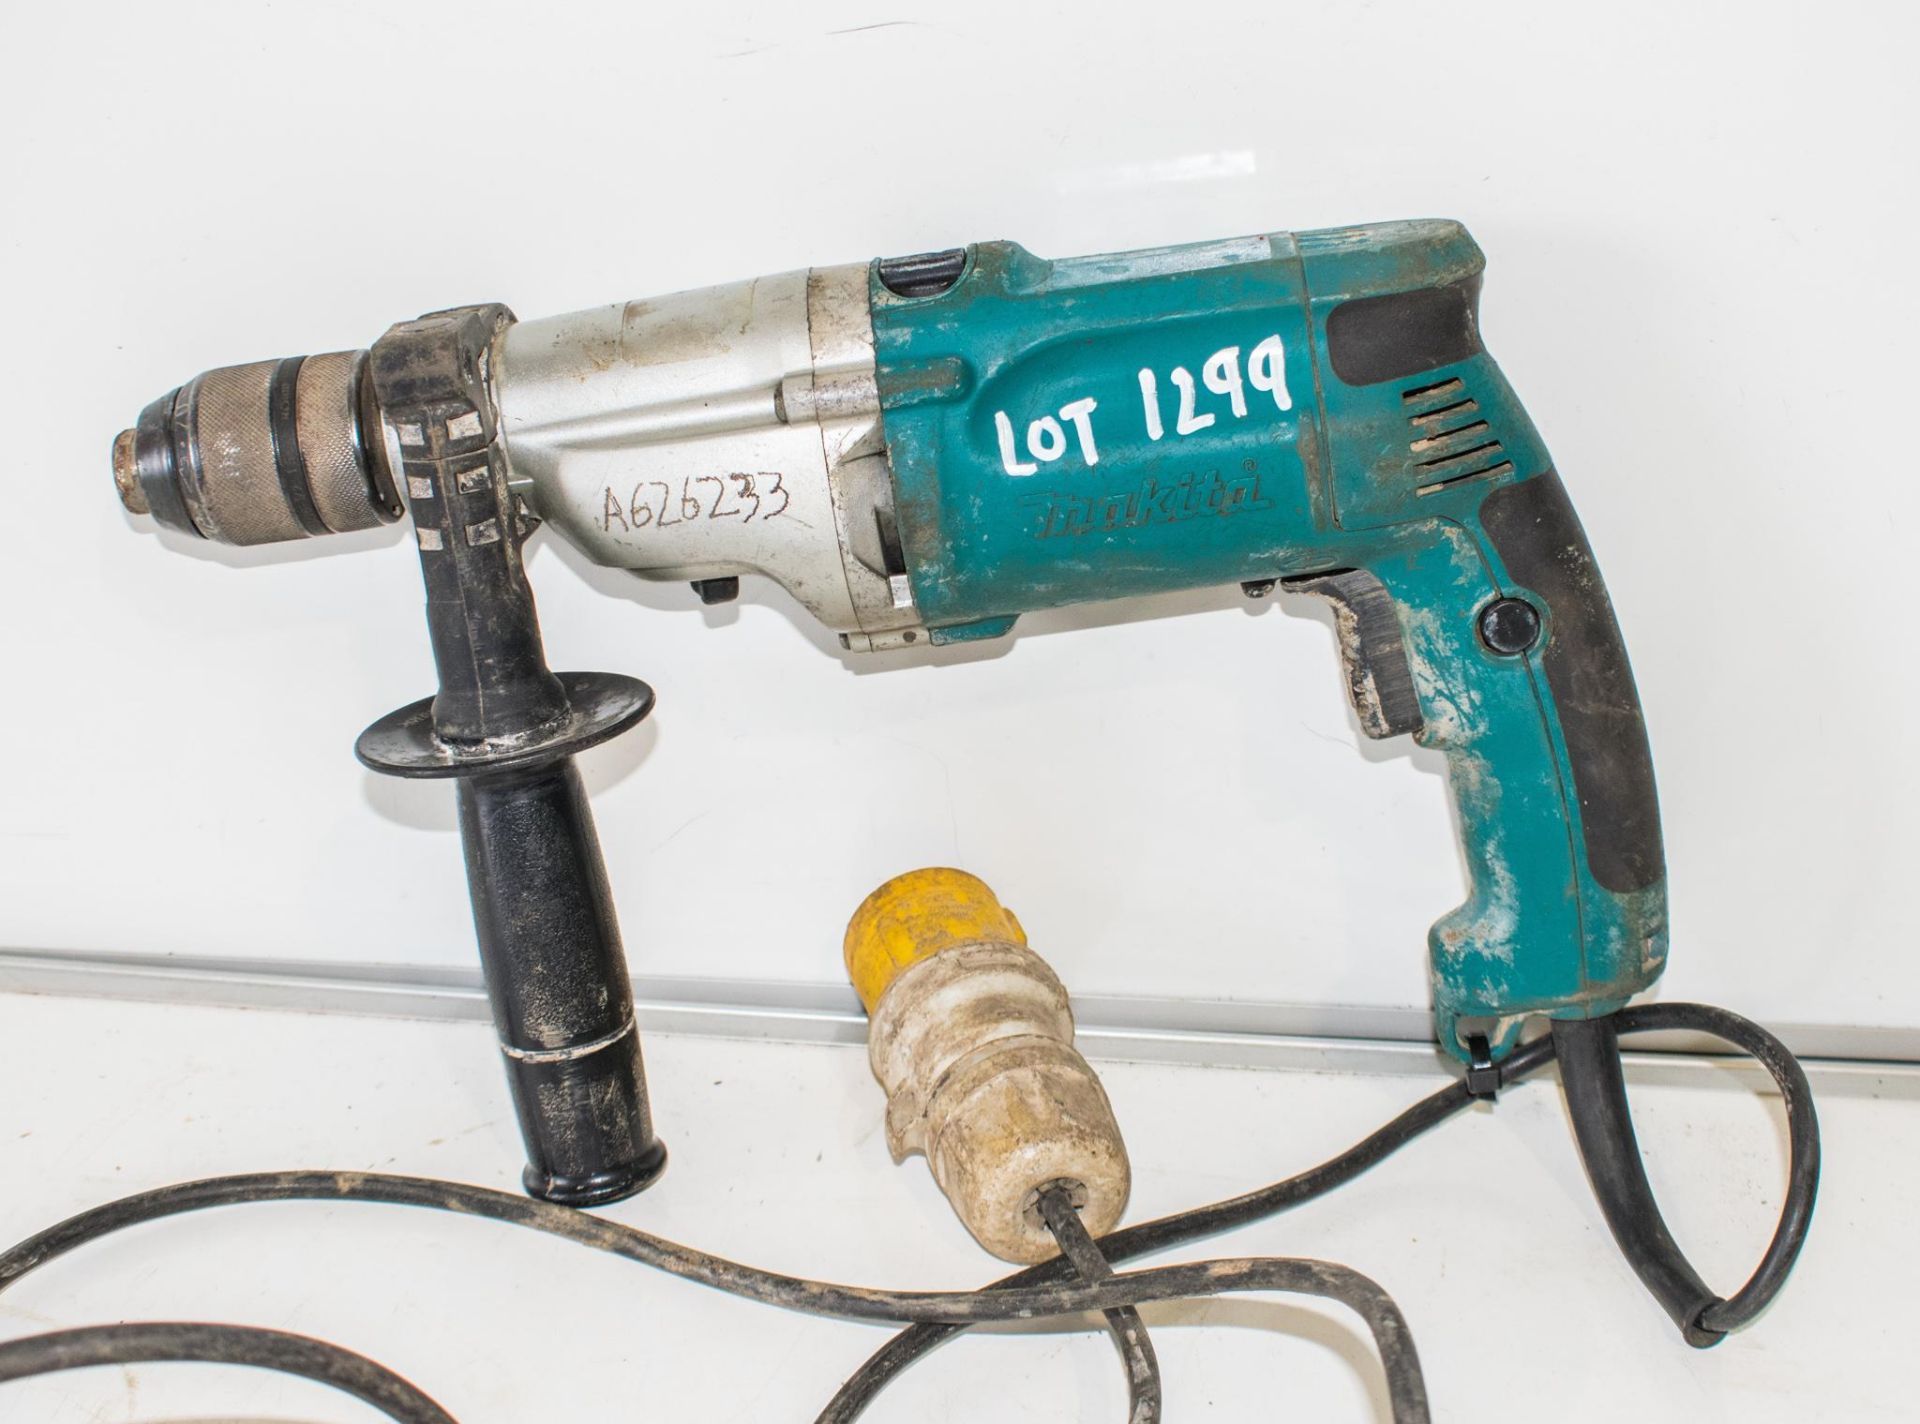 Makita 110v rotary hammer drill A626233